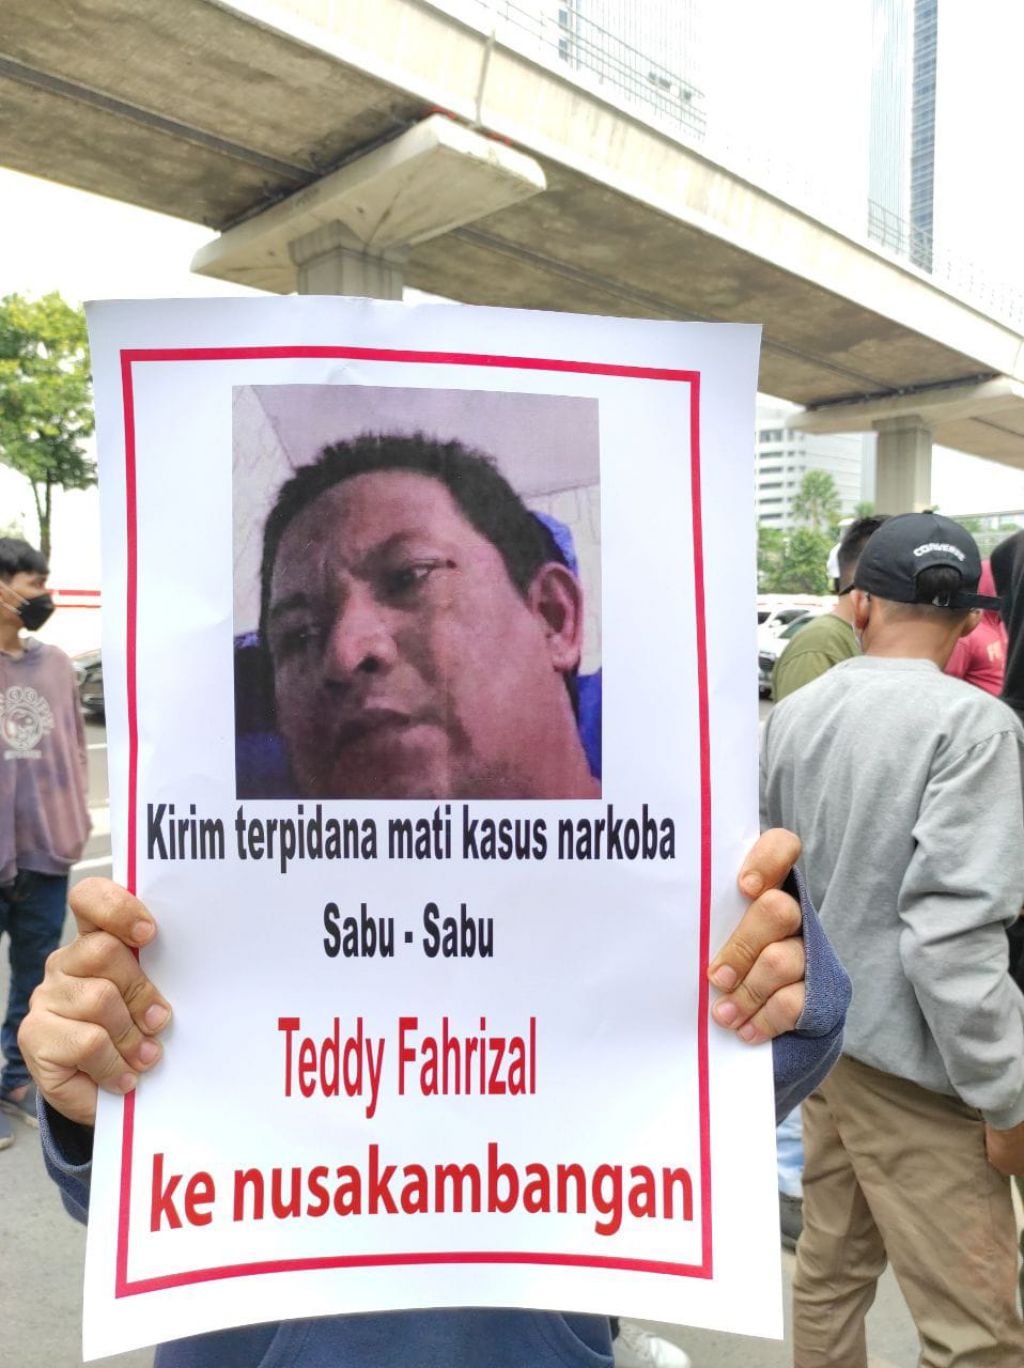 Mereka meminta agar Menteri Hukum dan HAM Yasonna Laoly memindahkan mantan bandar narkoba kakap itu ke penjara Nusakambangan.